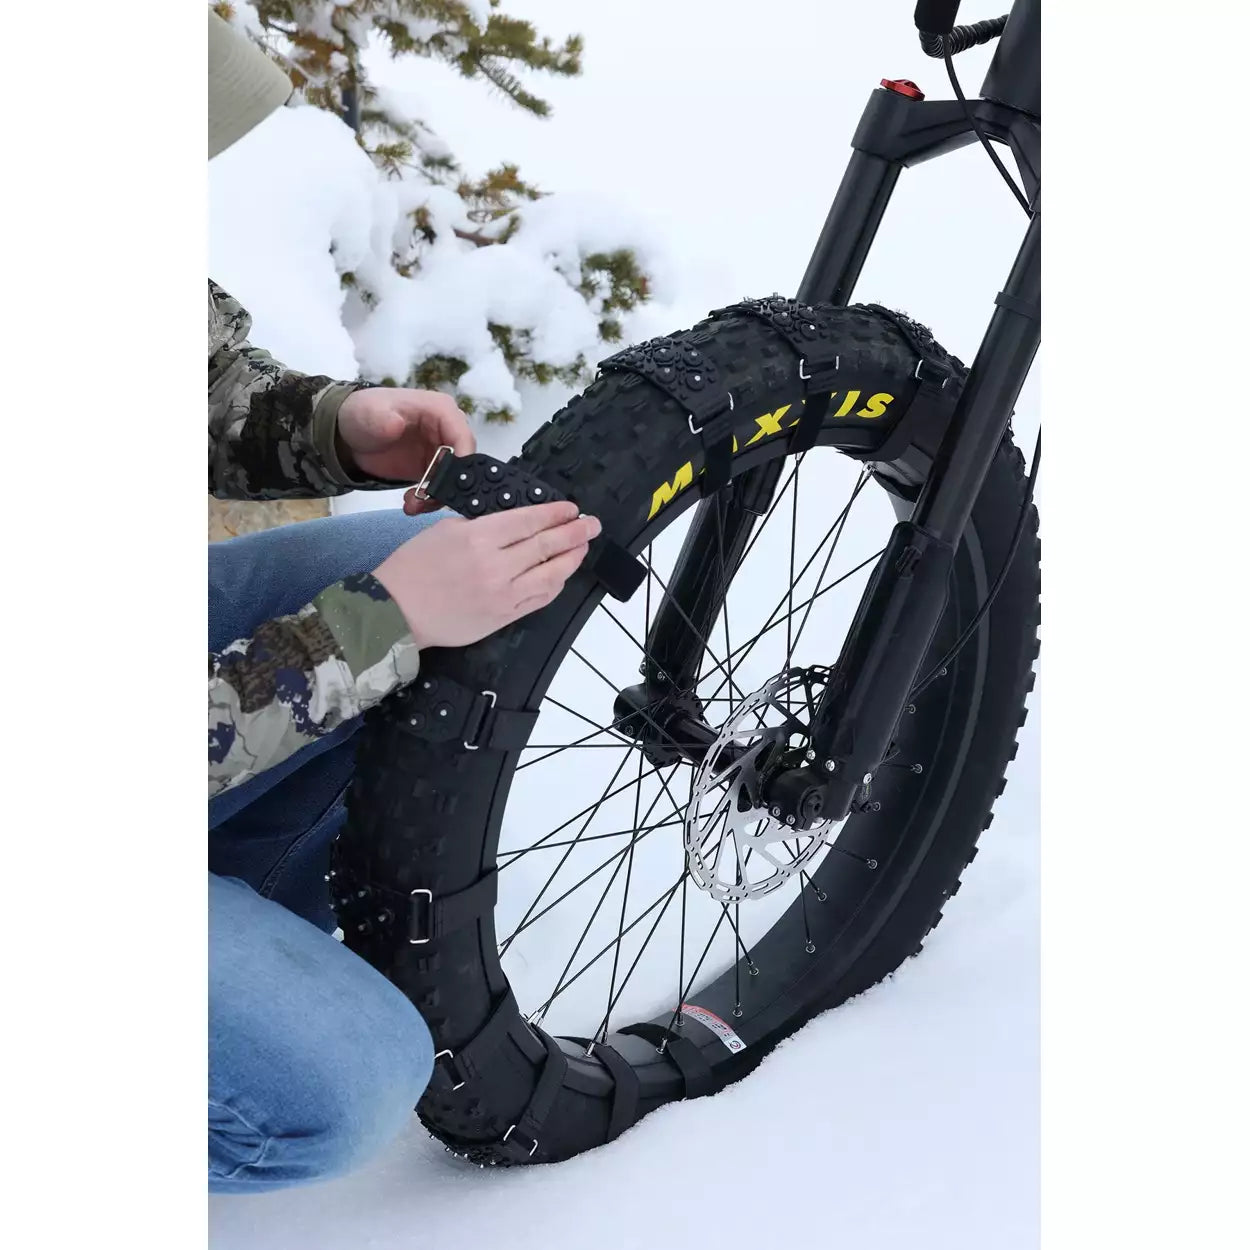 Bakcou Fat Tire Snow Straps